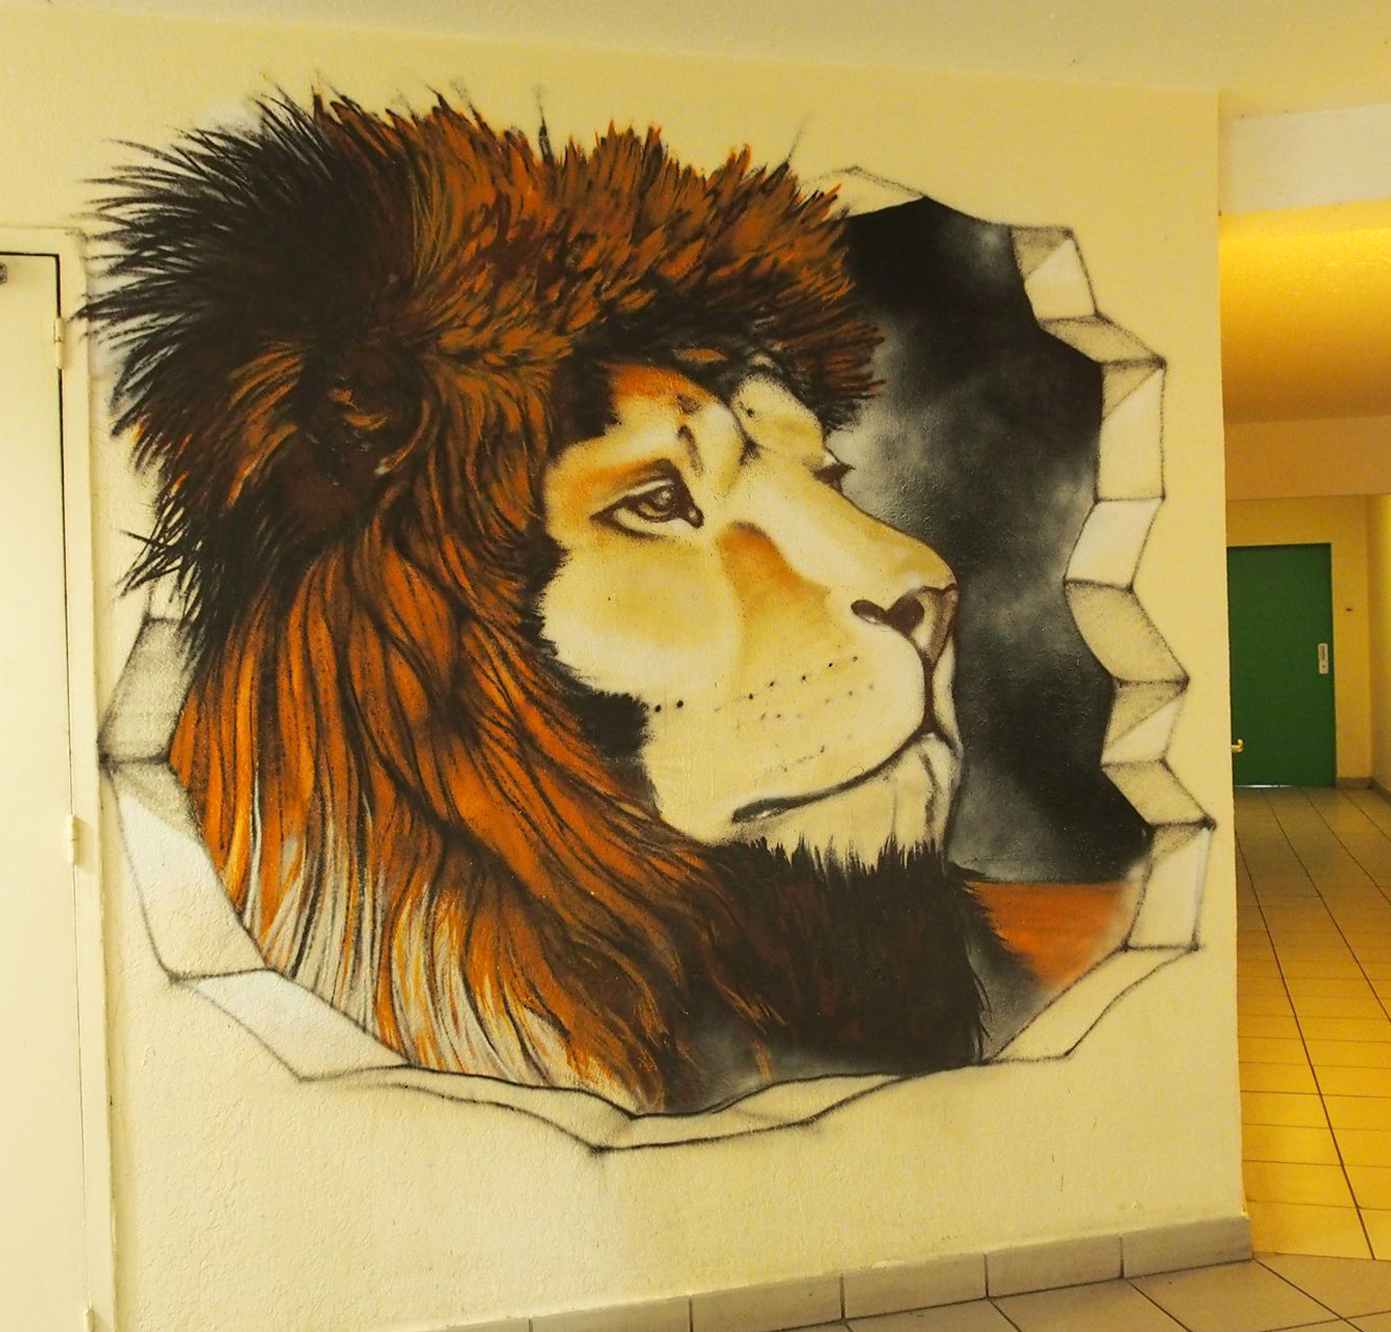 Dreux Hall immeuble avec un lion